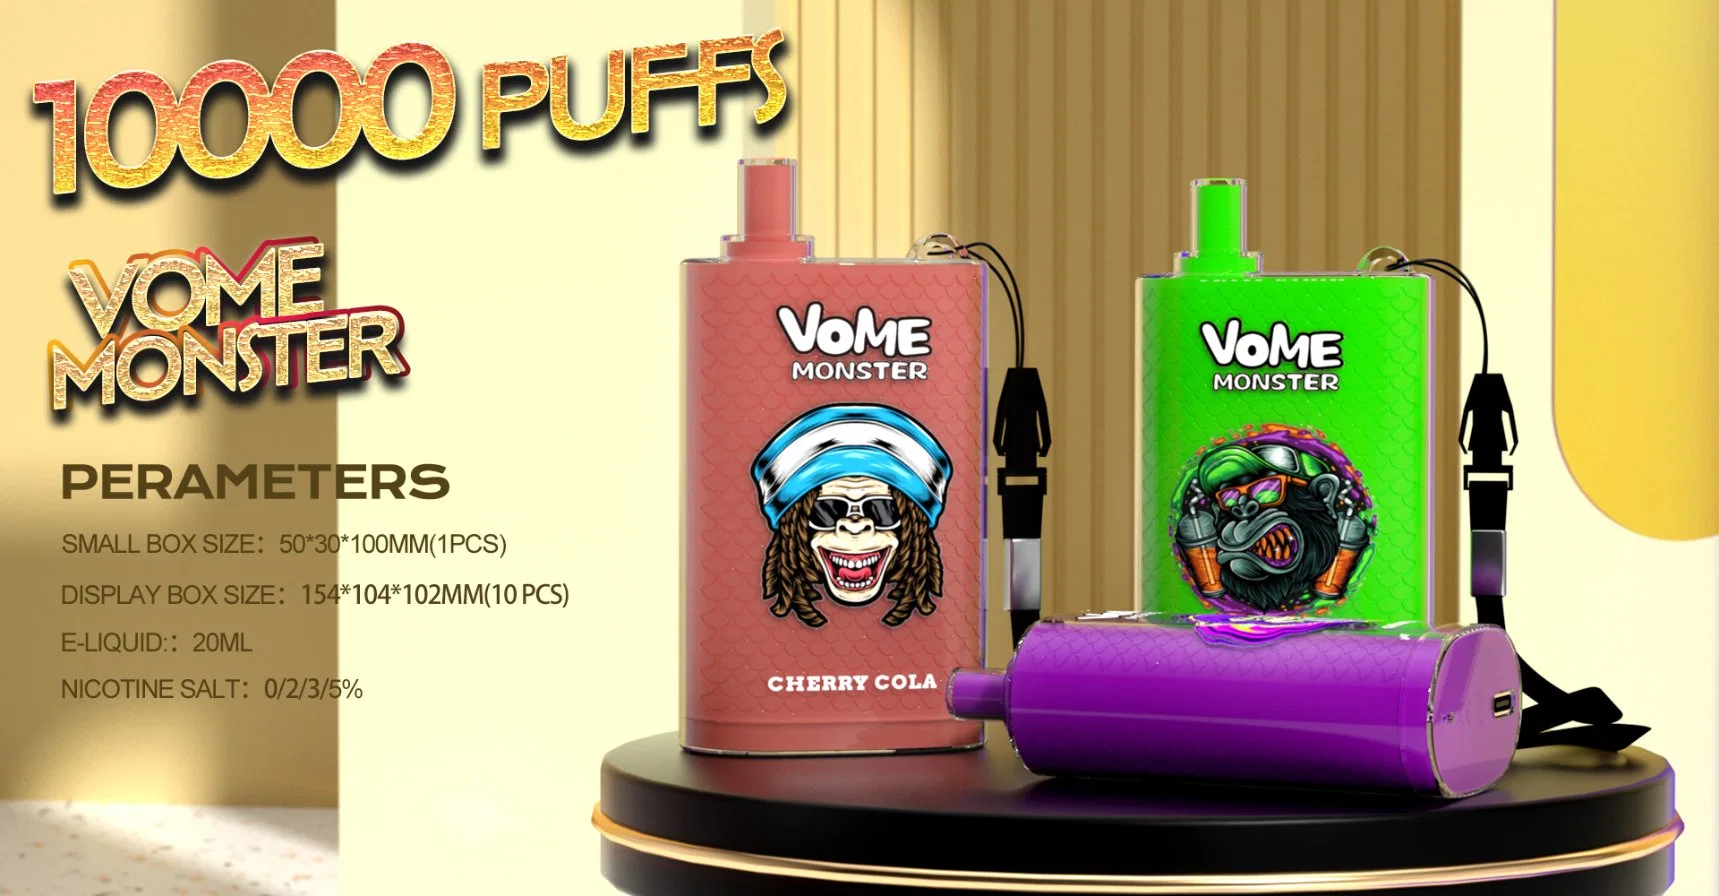 Fumot الأصلي المصنعين Vome Monster 10000 الهواء -- قابل للضبط نسيج الملف بالجملة القرد القرد القابل للتصرف